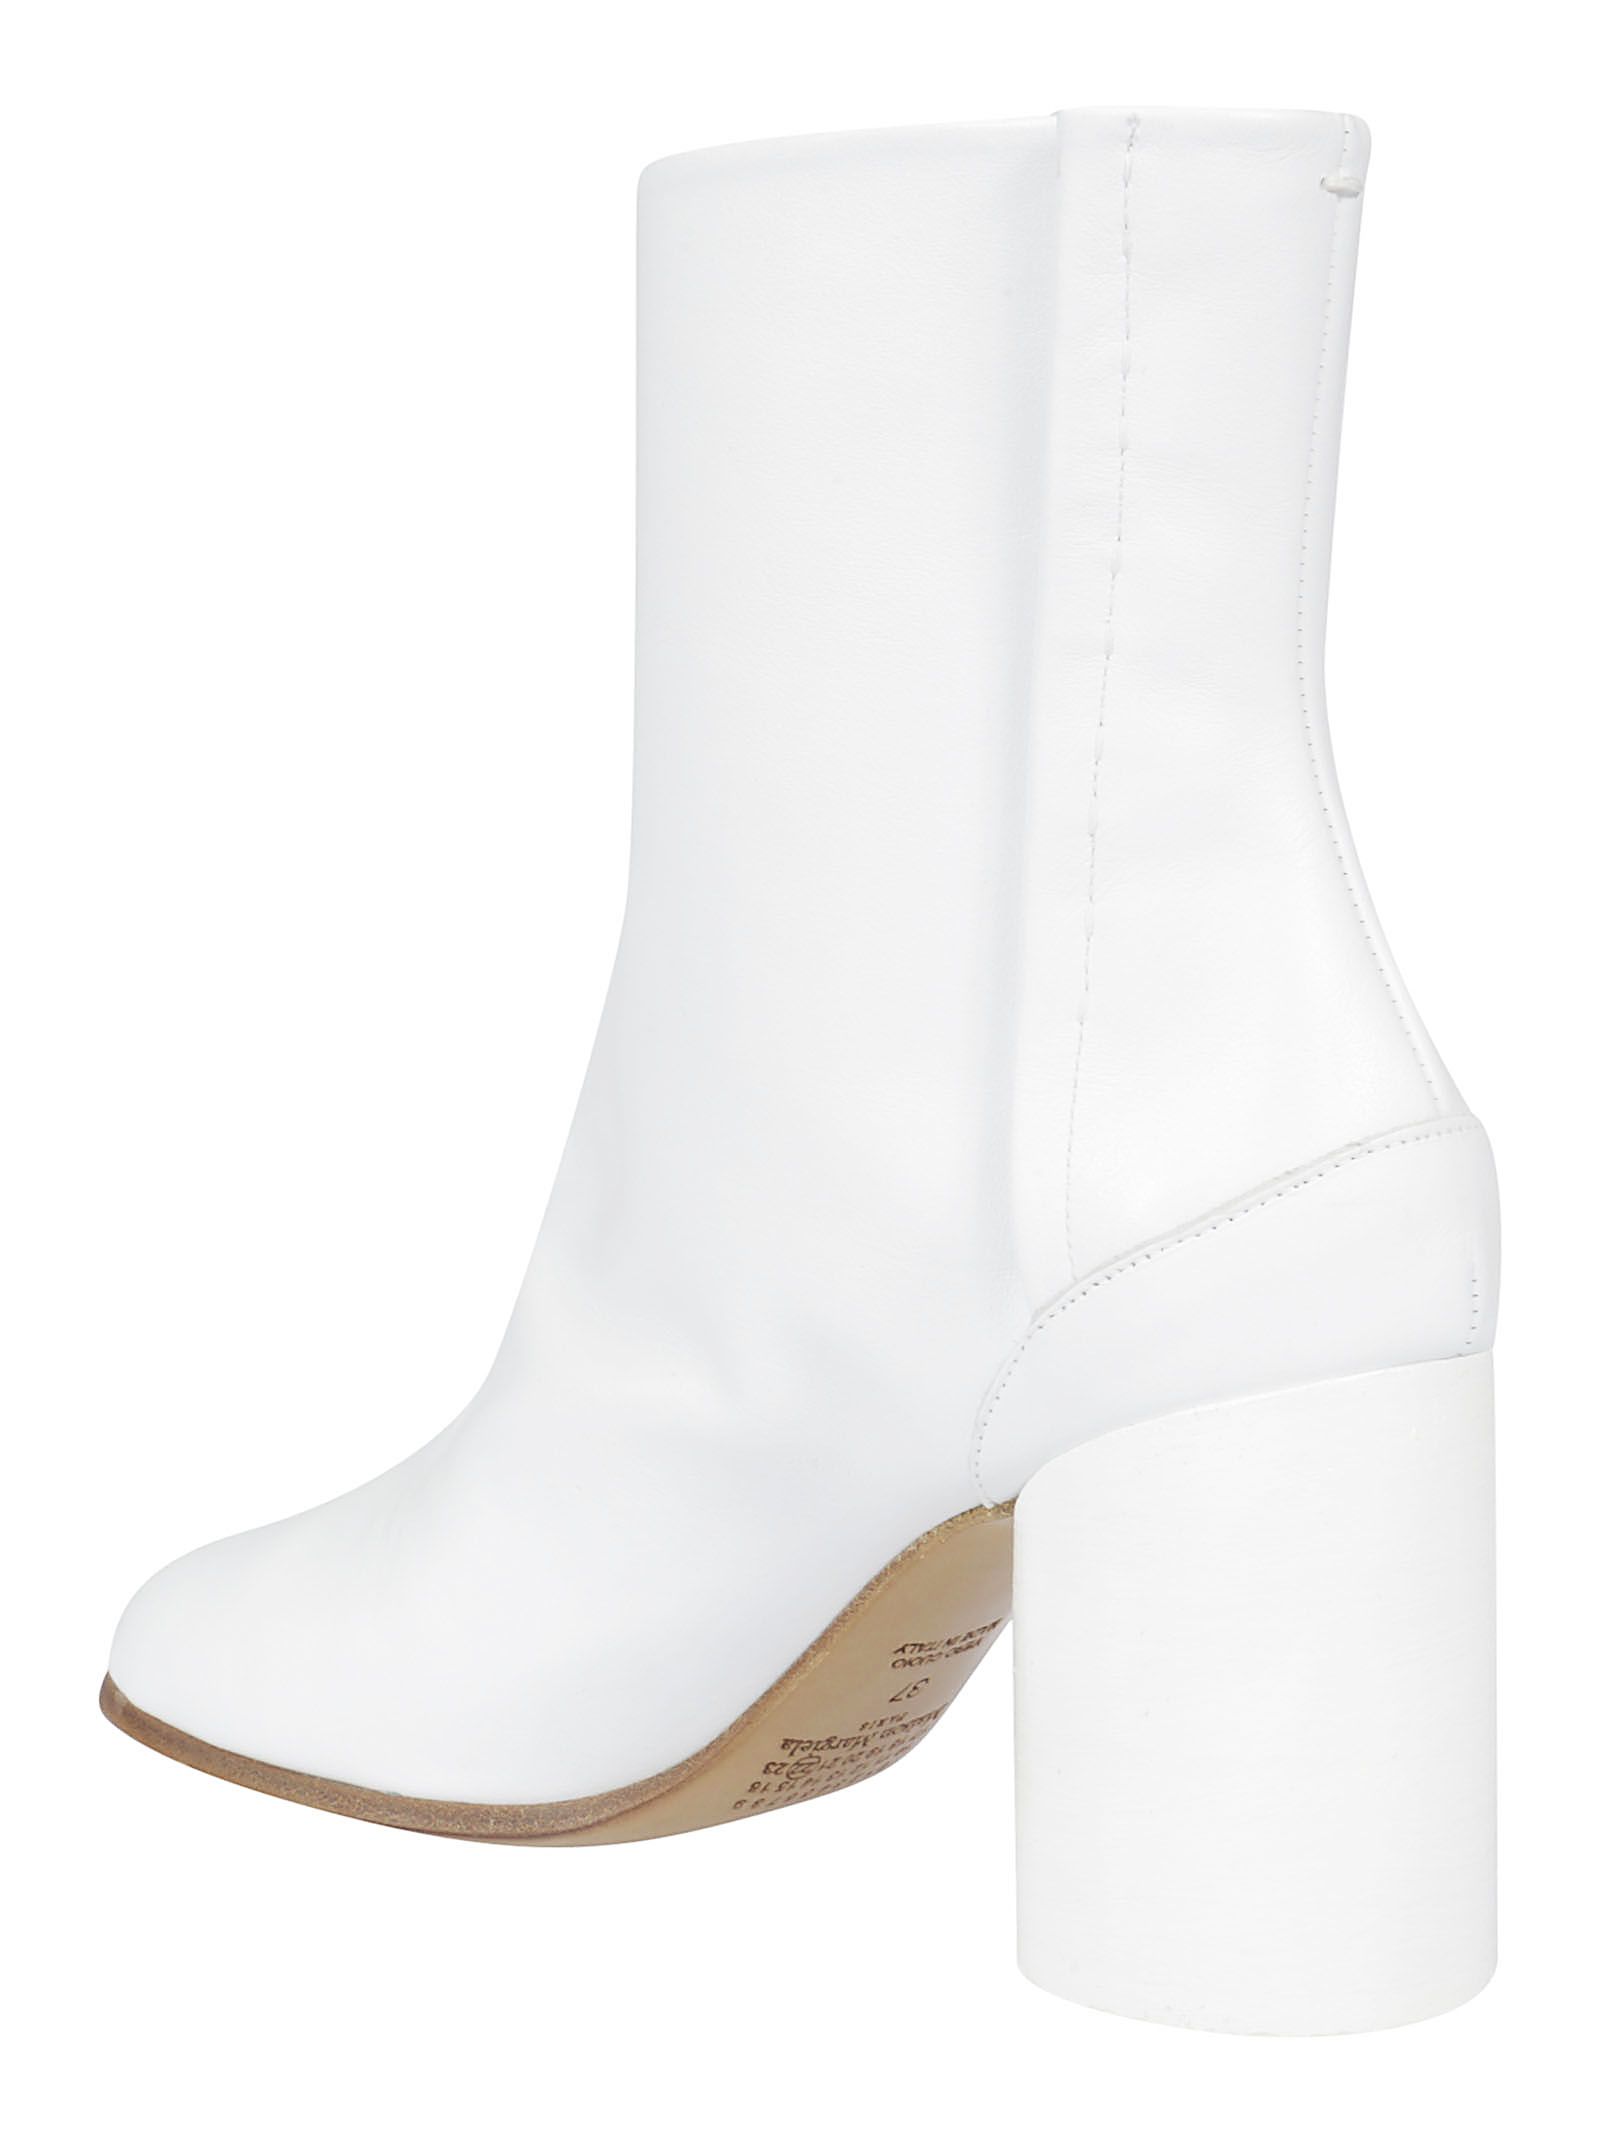 Maison Margiela Maison Margiela Tabi Ankle Boots - White - 10845690